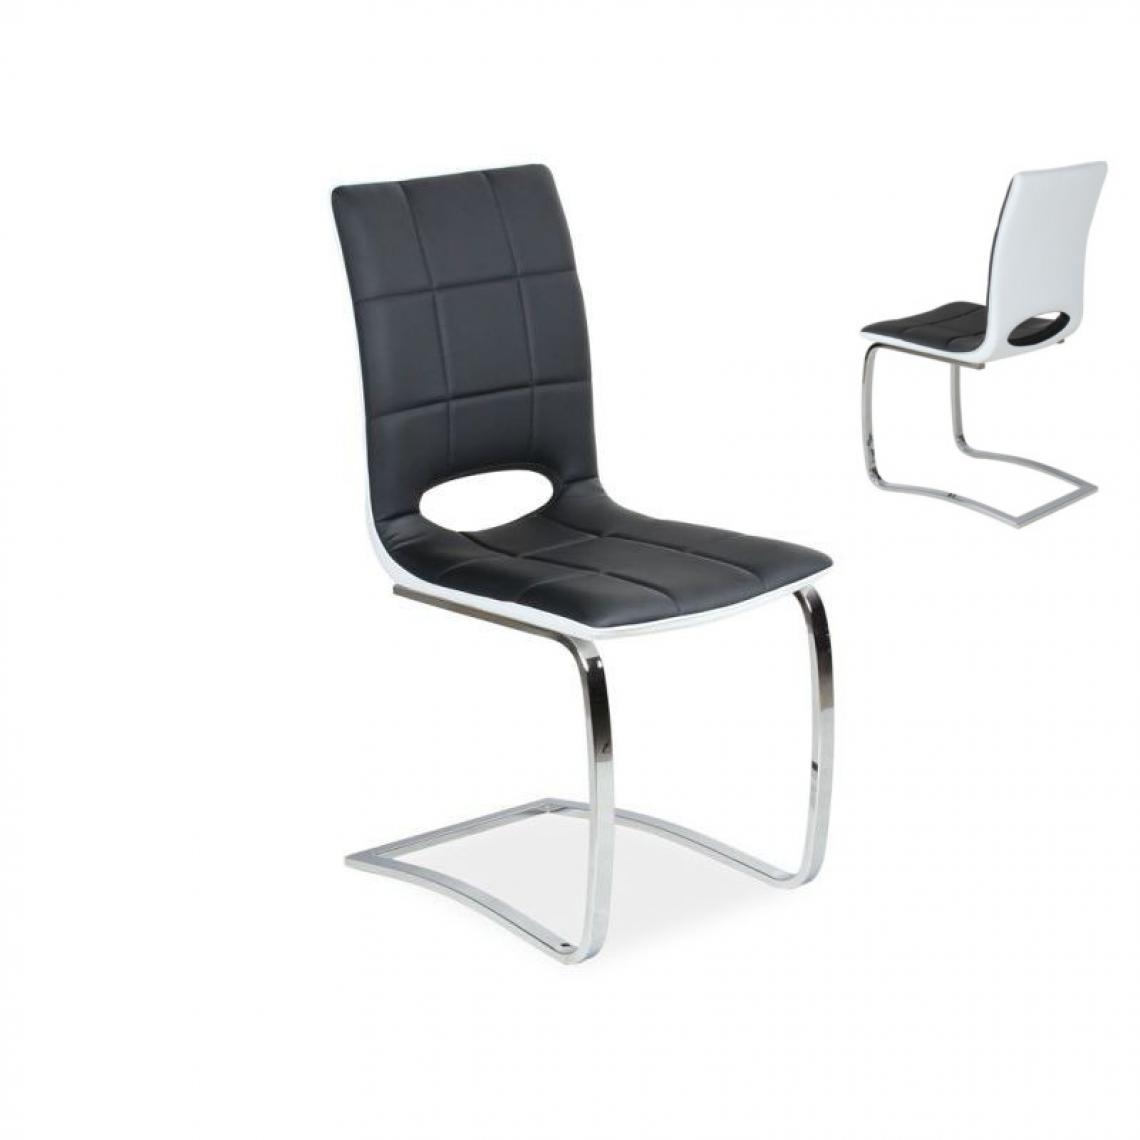 Ac-Deco - Chaise design - H431 - 45 x 44 x 96 cm - Noir et blanc - Chaises